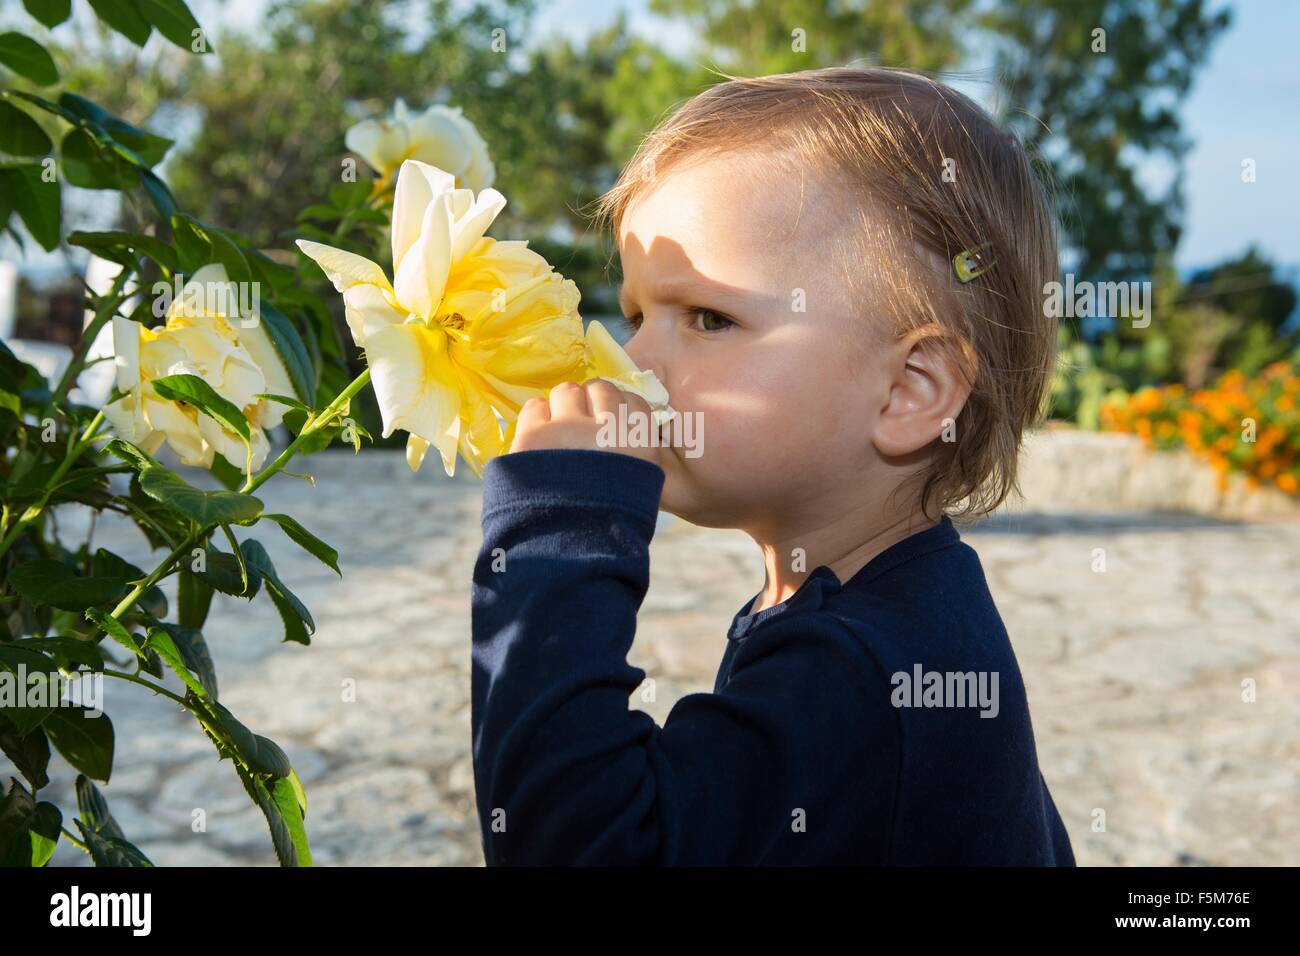 Weiblichen Kleinkind duftenden gelben stieg auf Terrasse Stockfoto